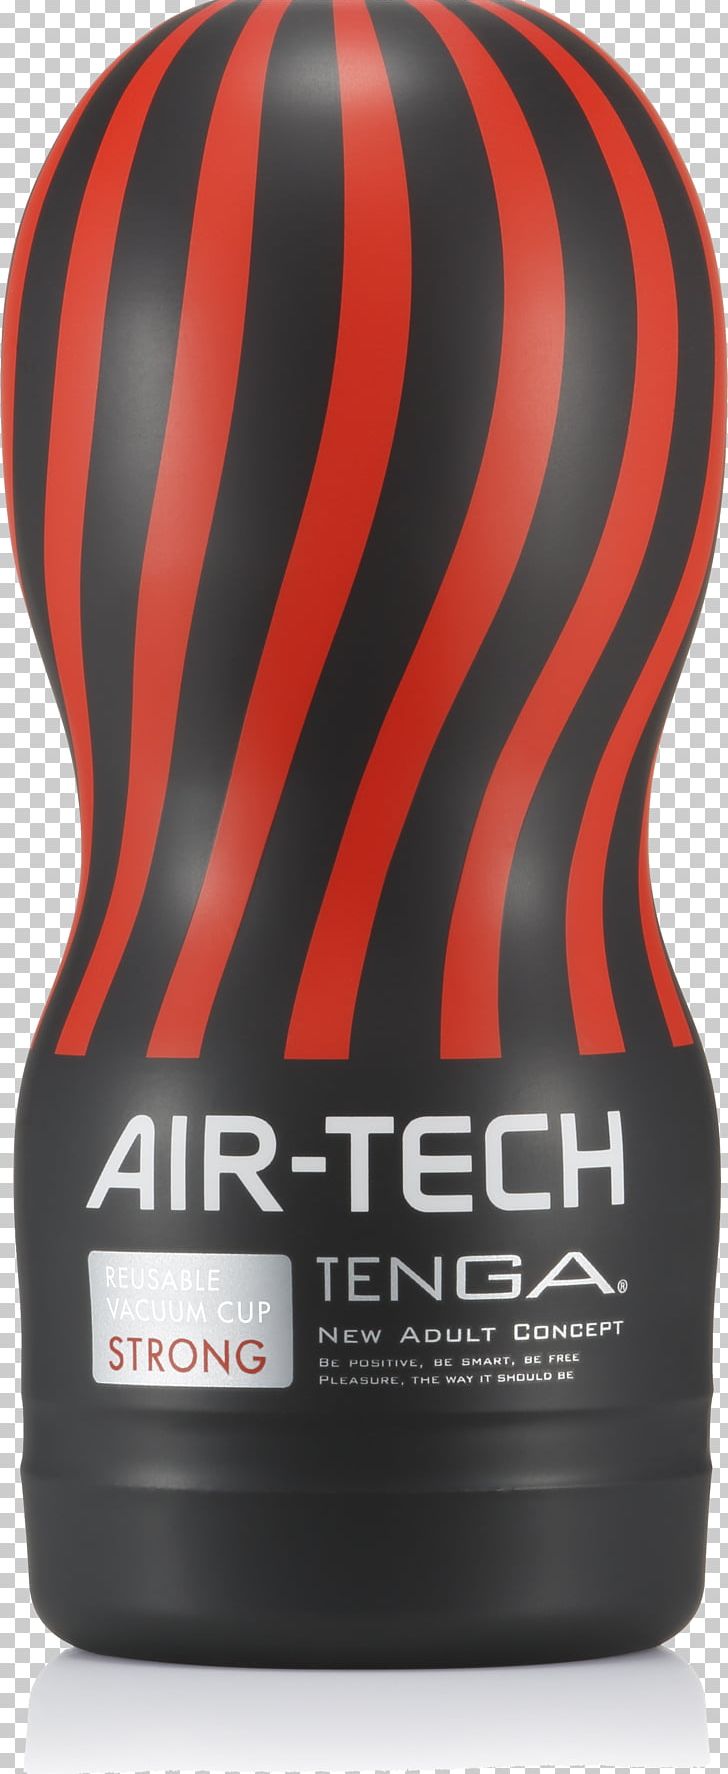 Aspirador Reutilizable Fuerte Air-Tech Cup Tenga 554555 Product Design Brand PNG, Clipart, Brand, Heavy Metal, Orange, Tenga, Vacuum Free PNG Download